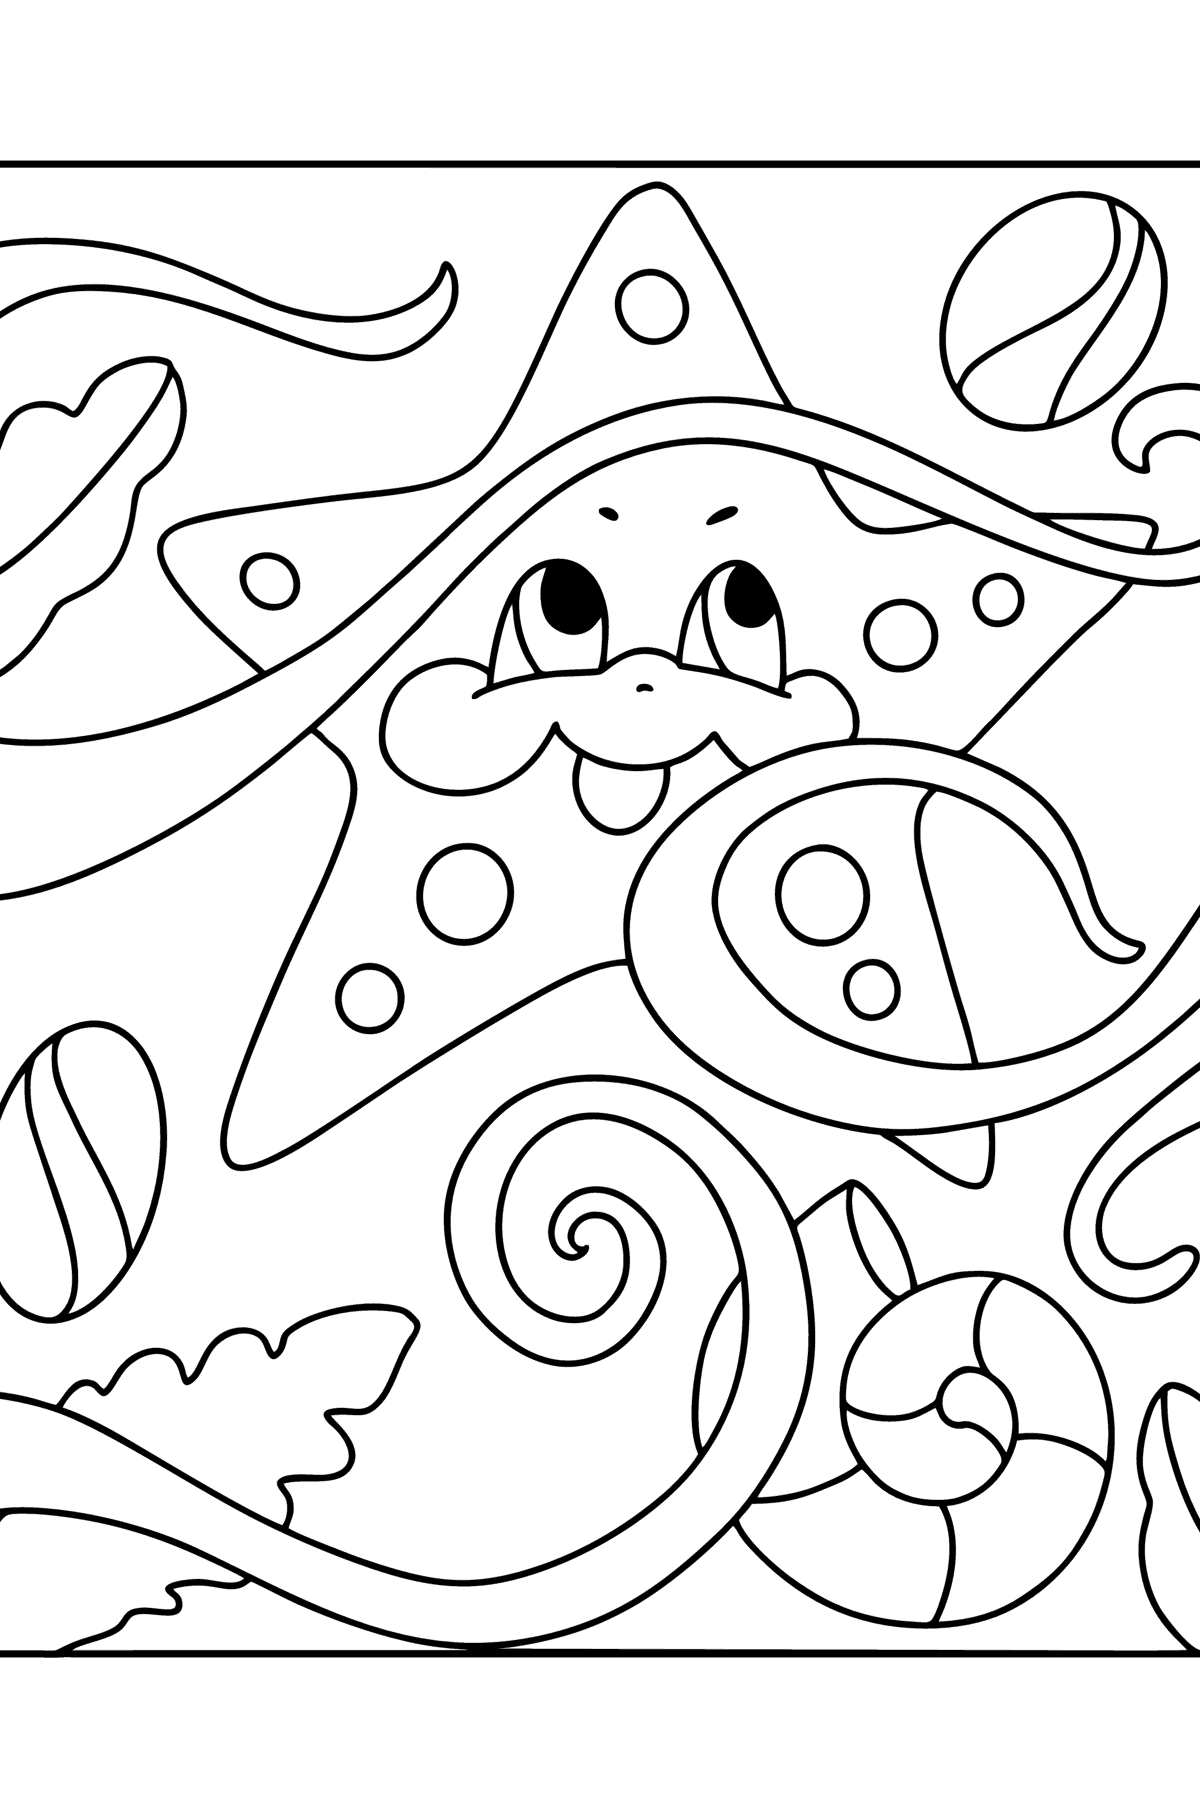 Раскраска Морская звездочка малыш - Картинки для Детей